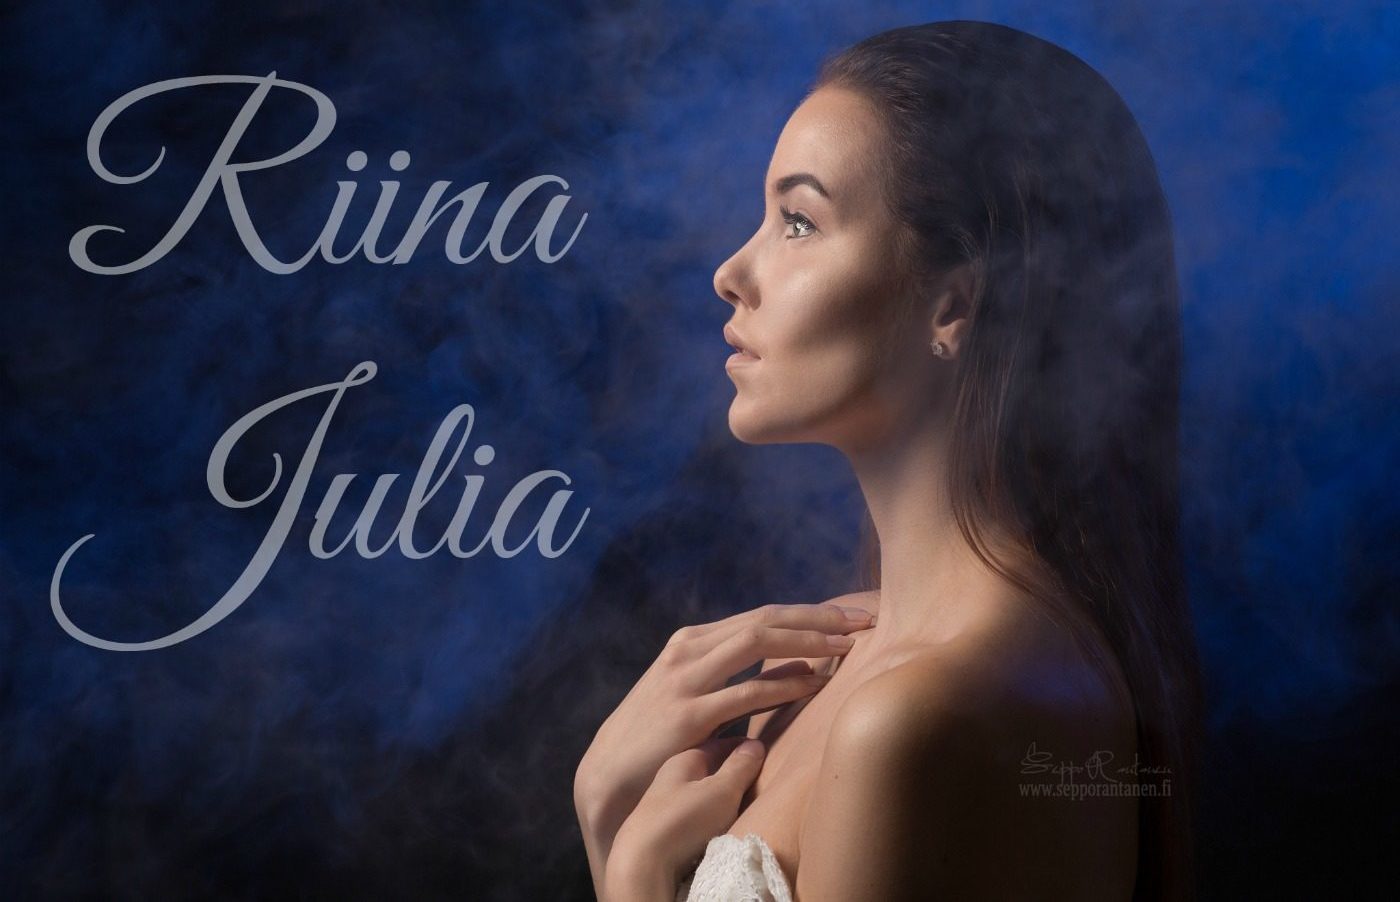 Riina Julia